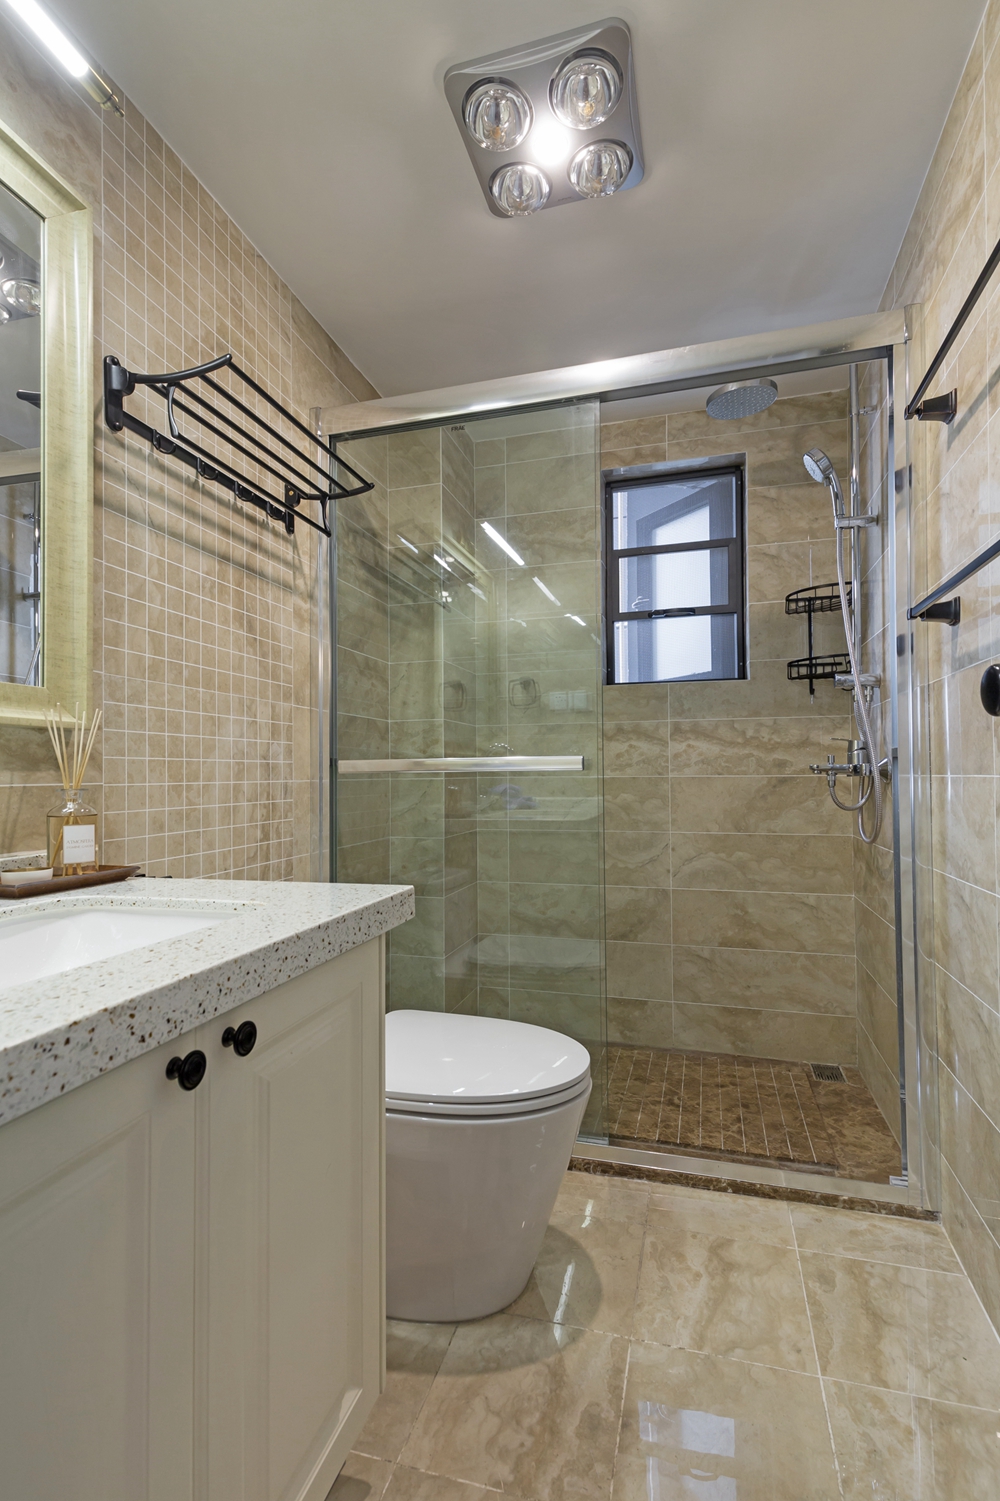 卫生间以米色为背景墙，局部采用干湿分离设计，搭配白色洁具，让人舒适自然。